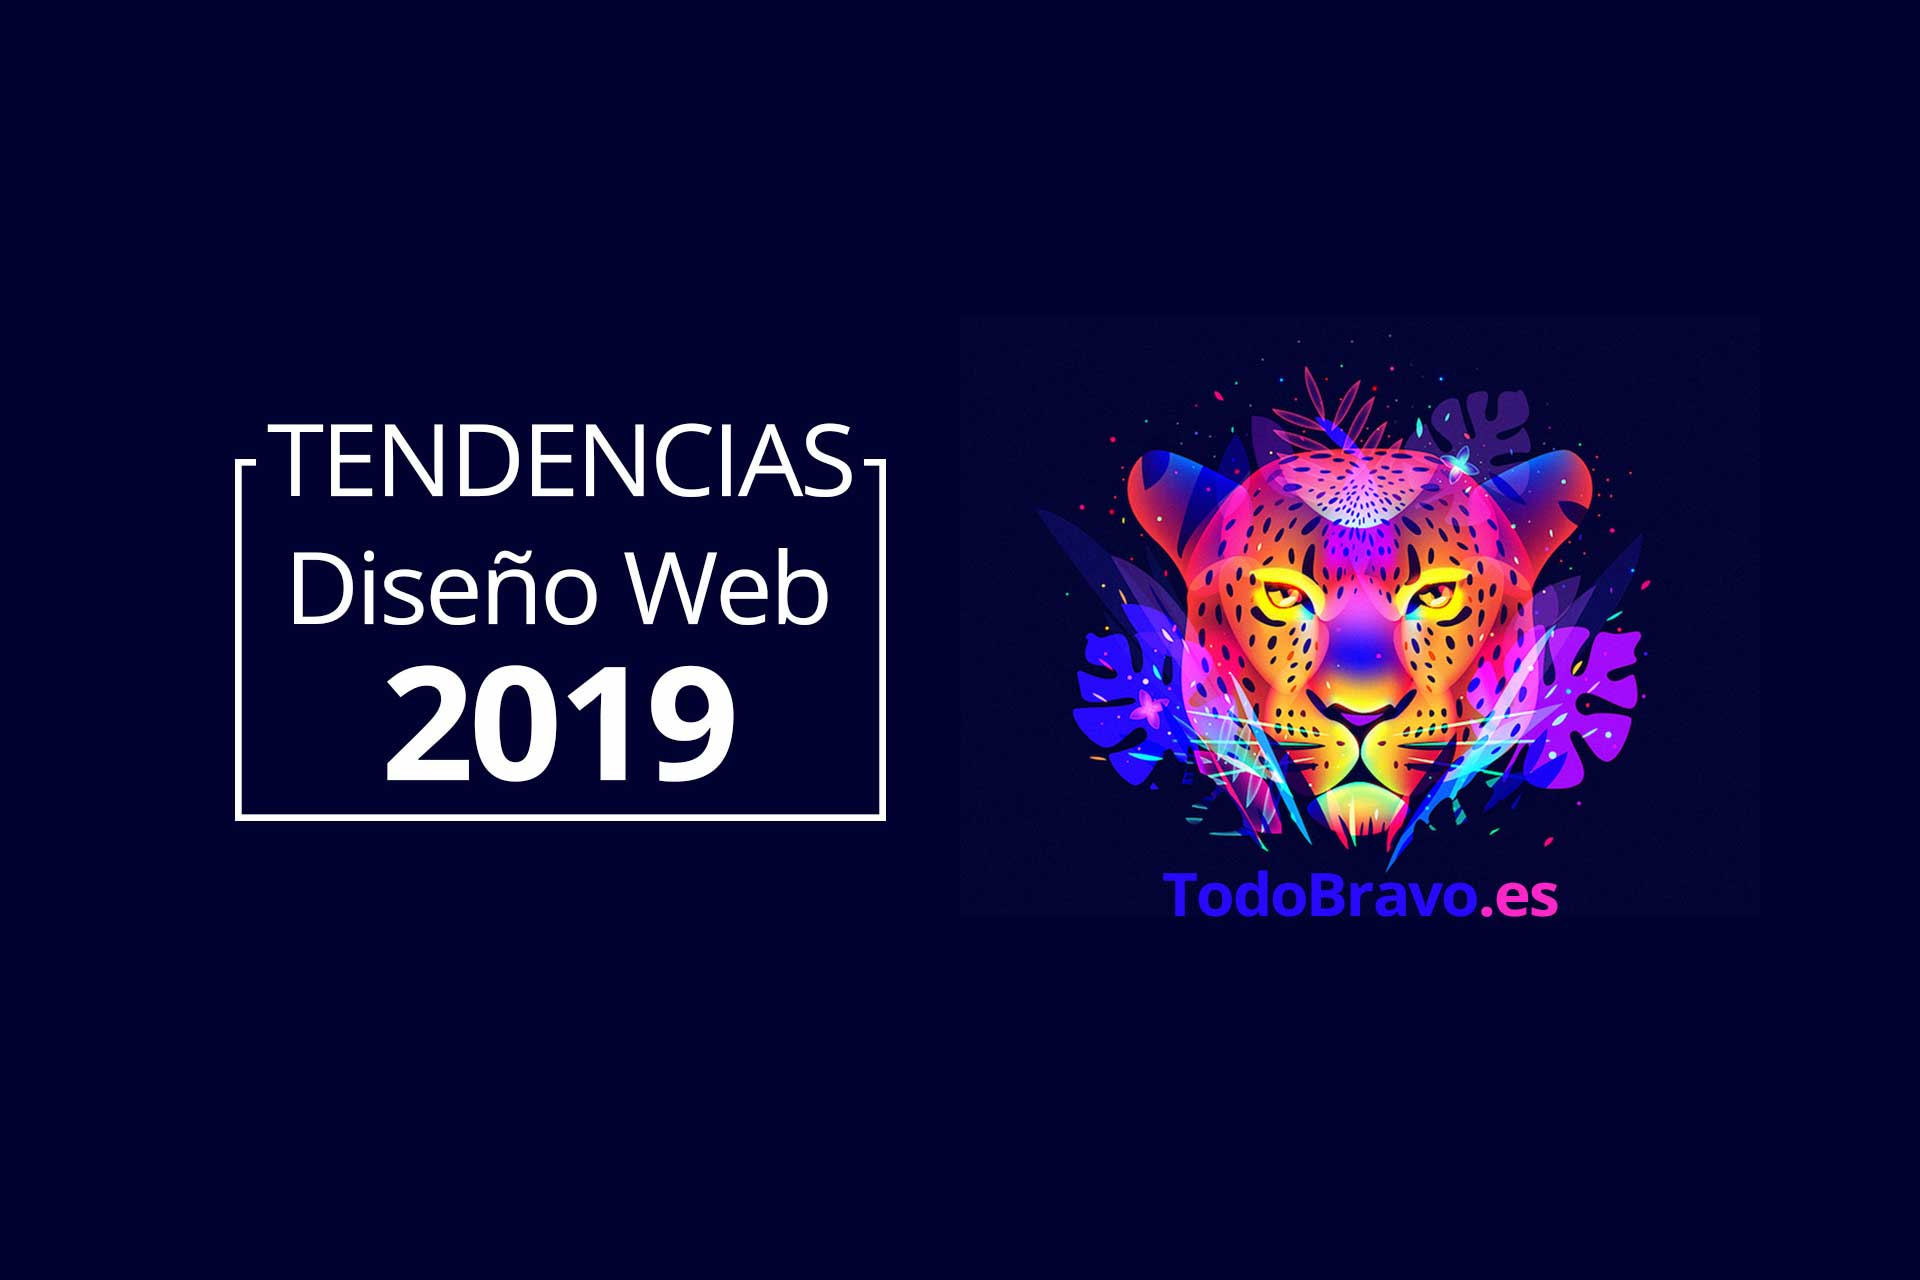 tigre multi colores en articulo tendencias diseño web 2019 de todobravo